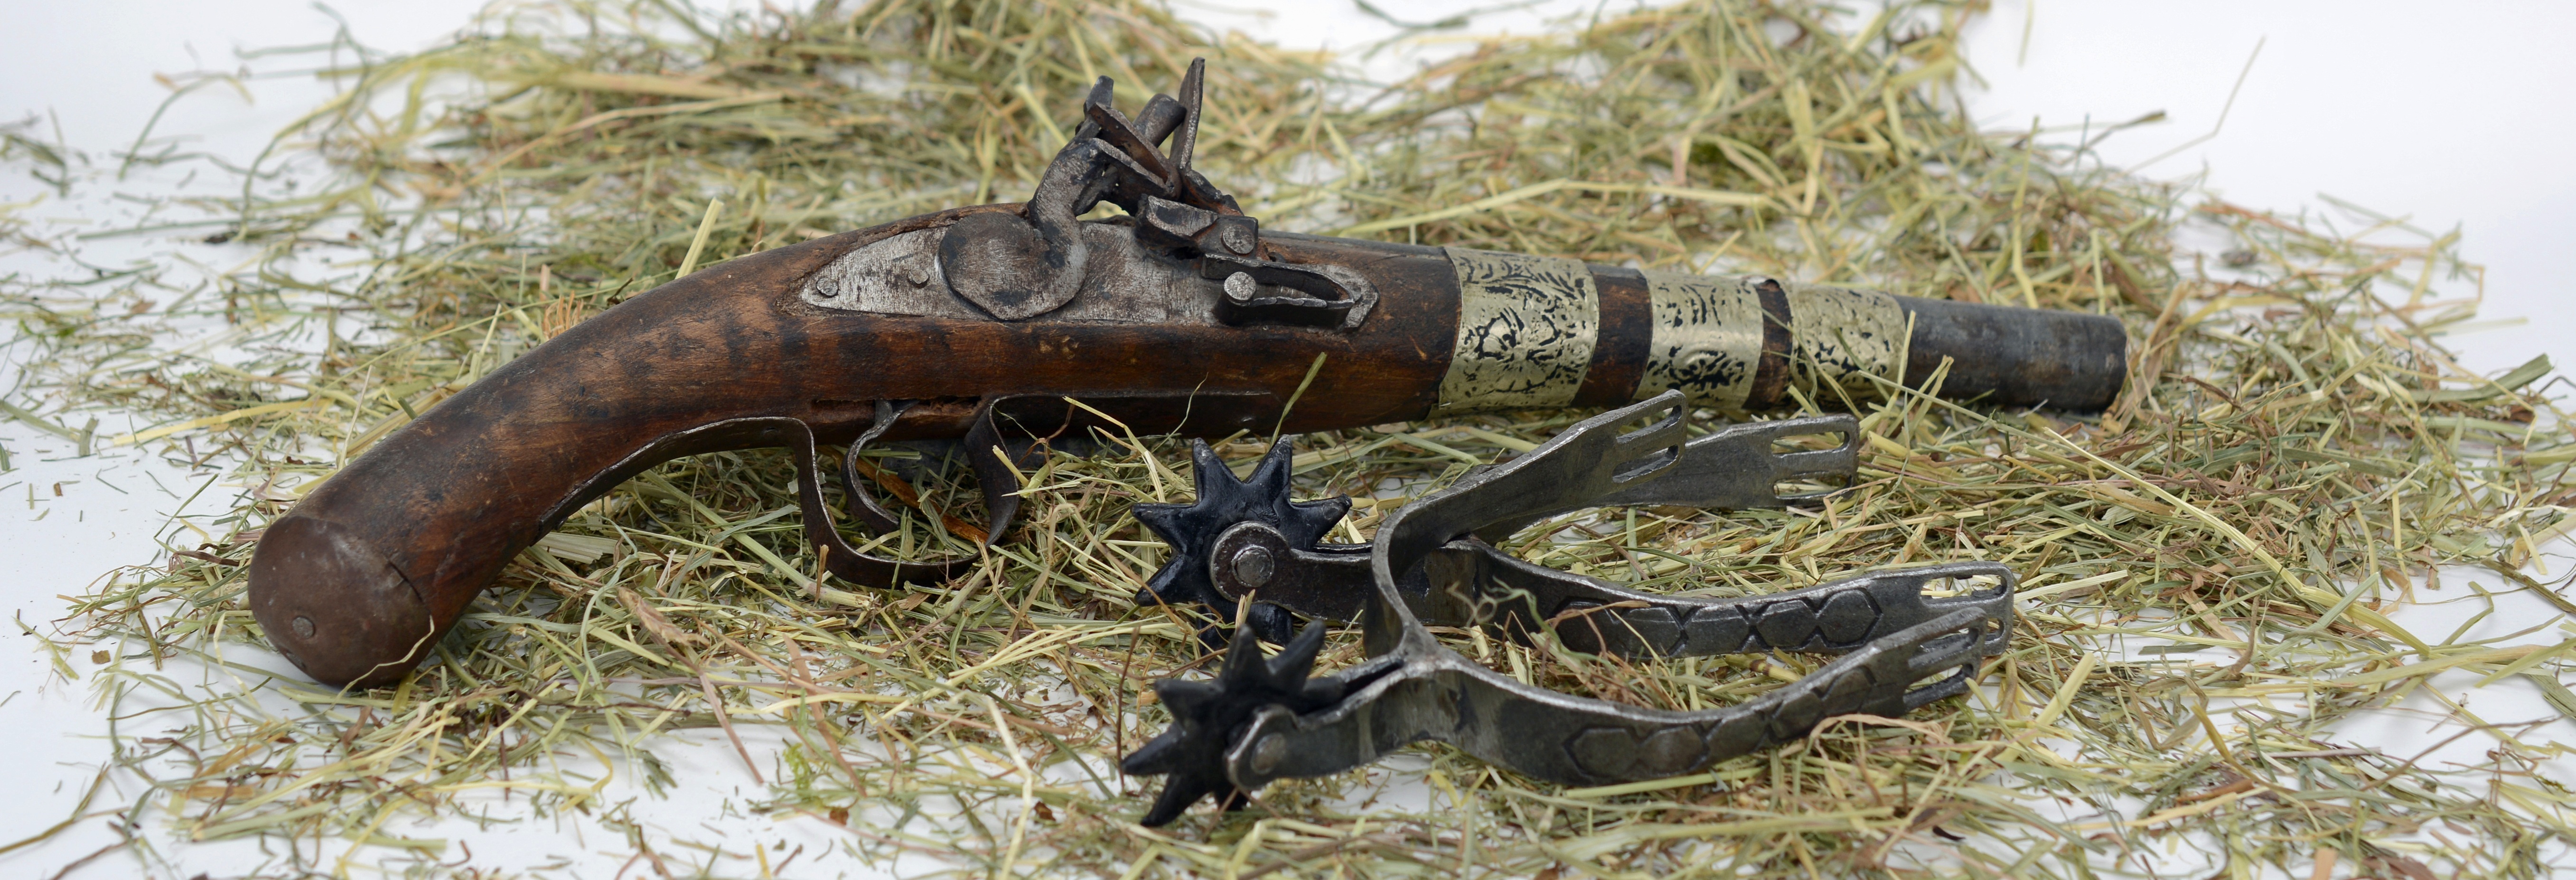 Antique Pistol Old Gun Weapon Vintage 5427x1853